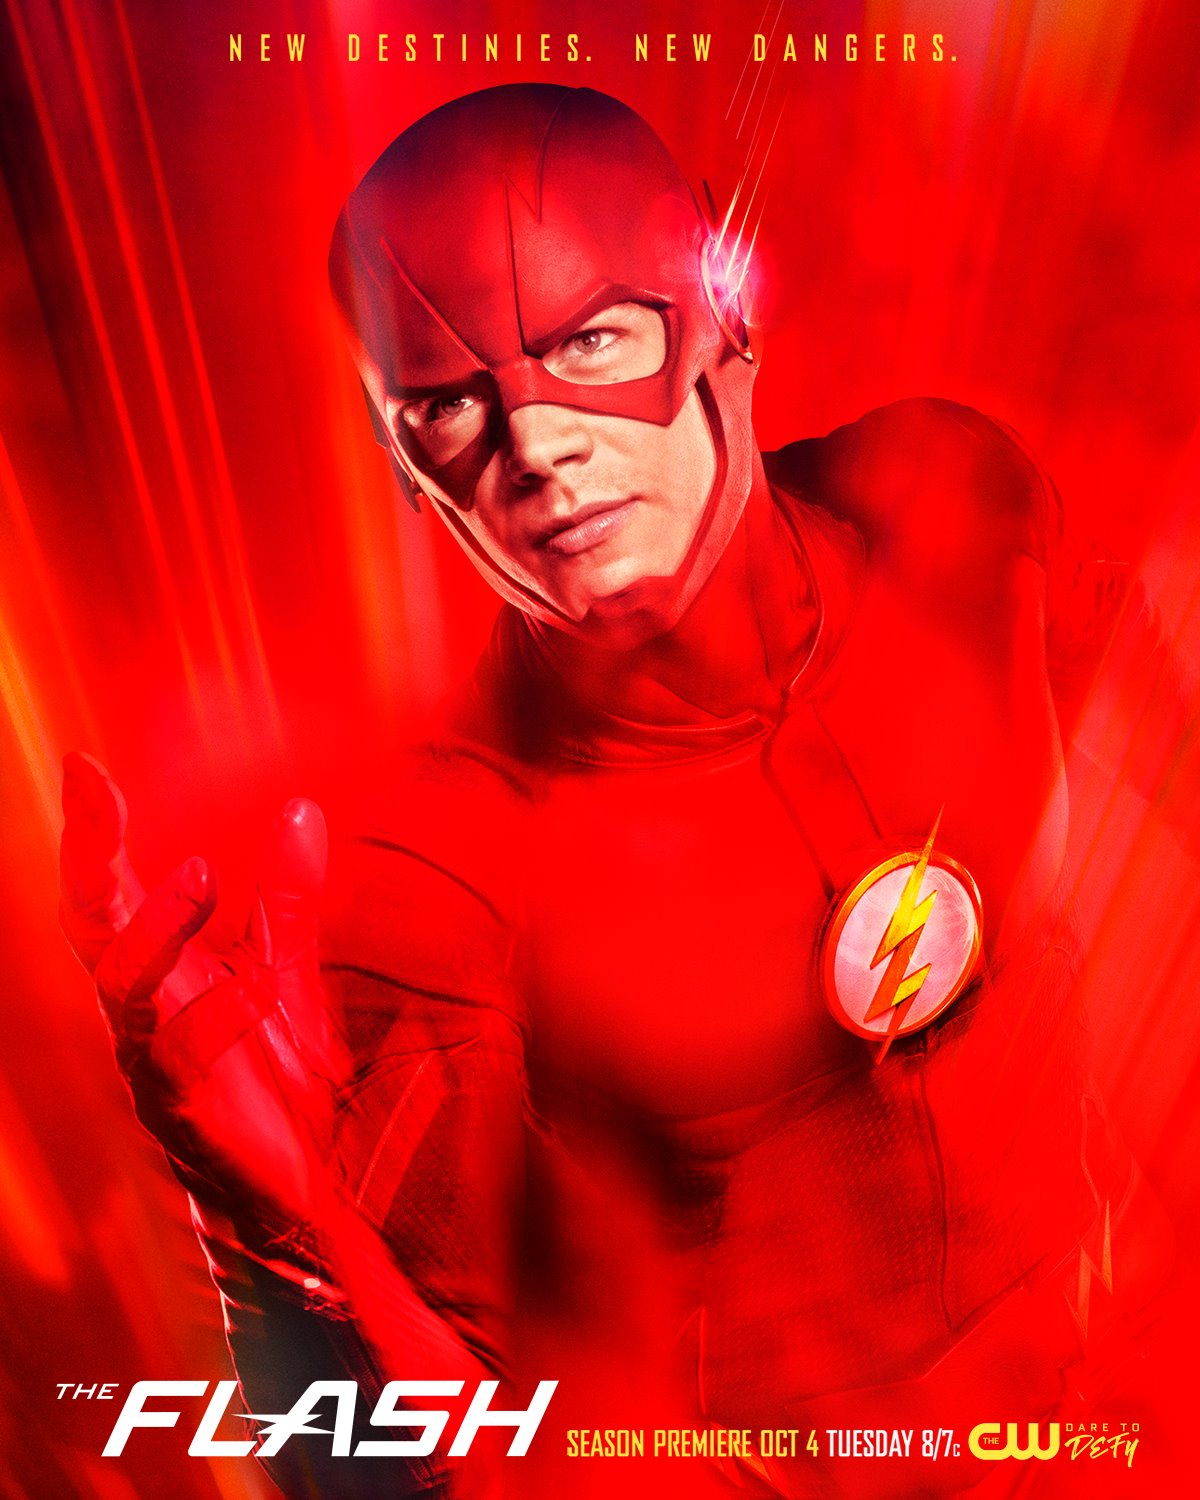 [ฝรั่ง]-[Complete!!] The Flash Season 3 : เดอะ แฟลช วีรบุรุษเหนือแสง ปี